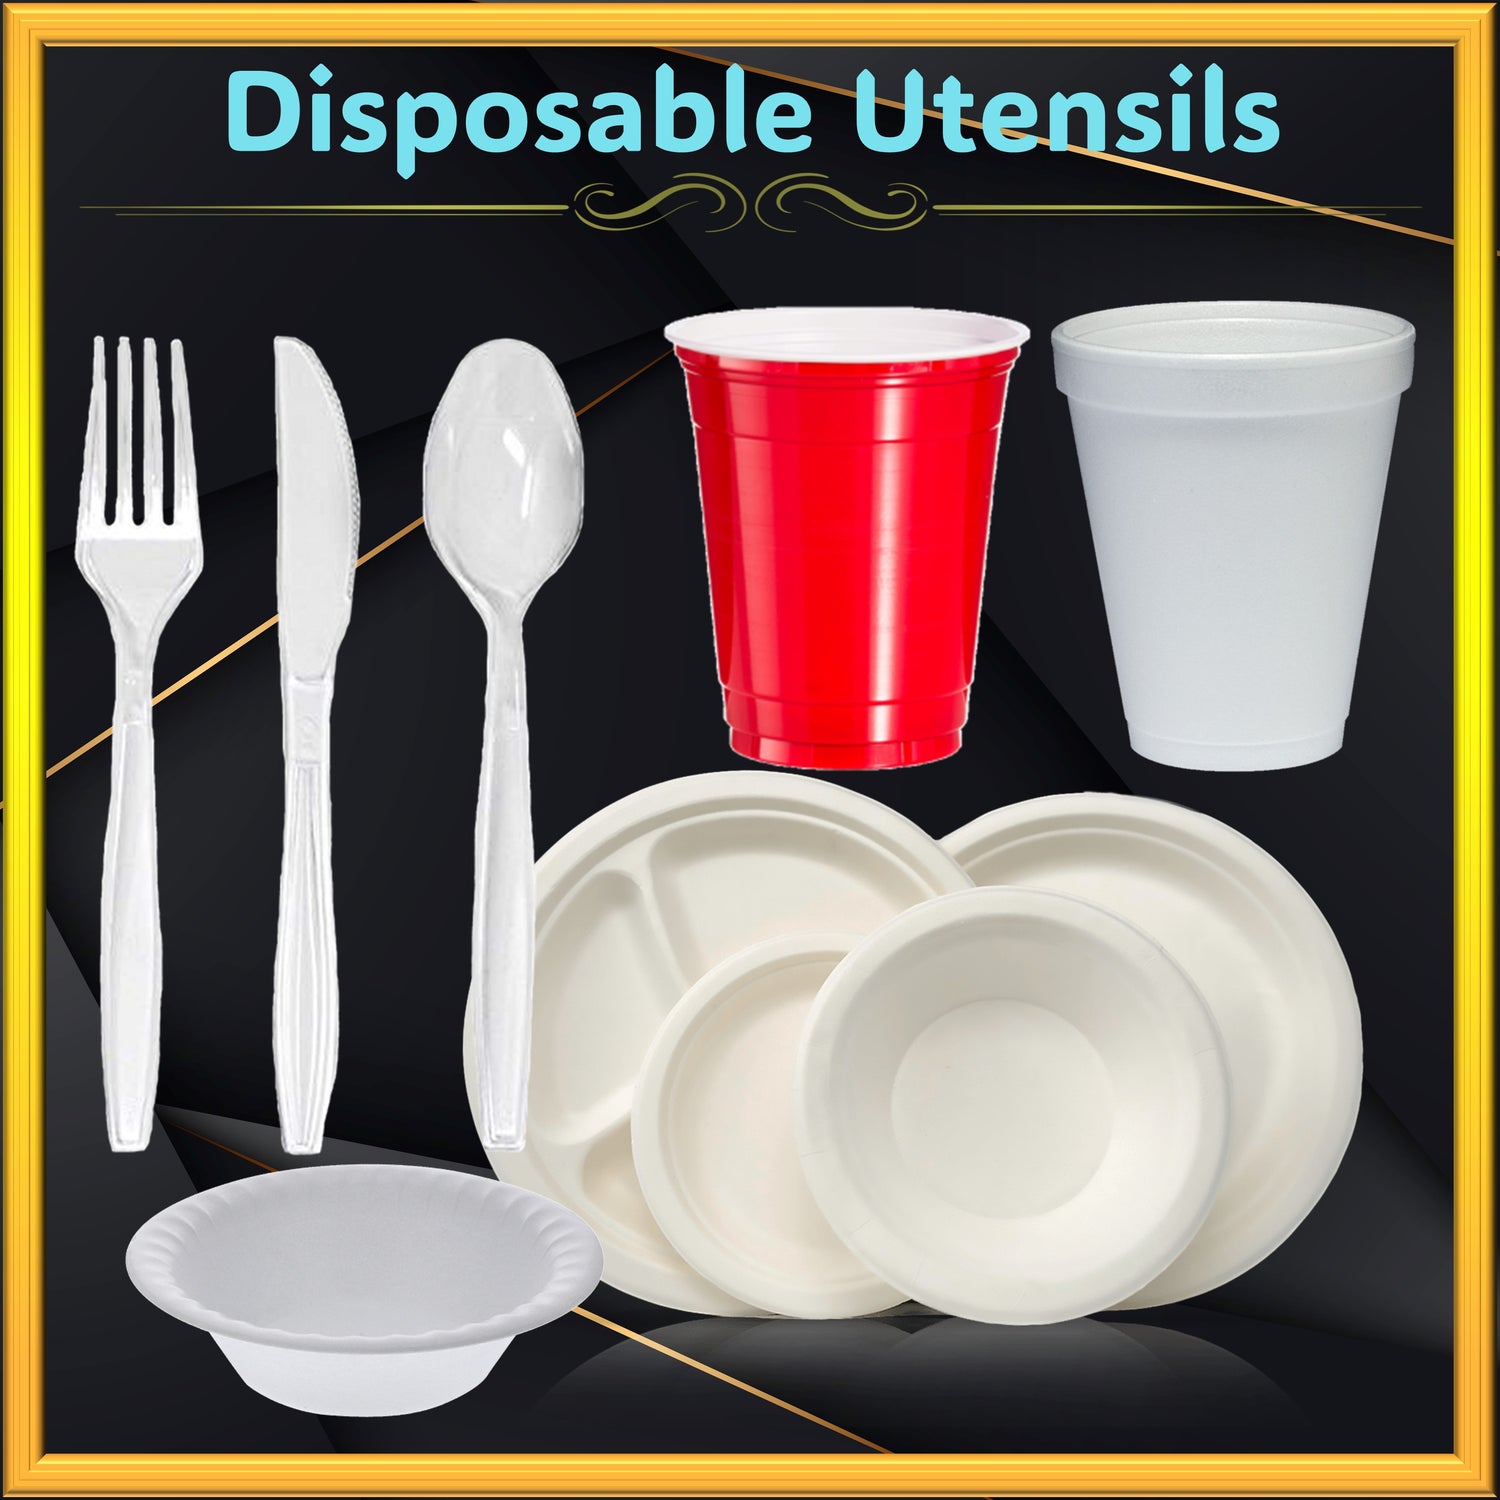 Disposable Utensils